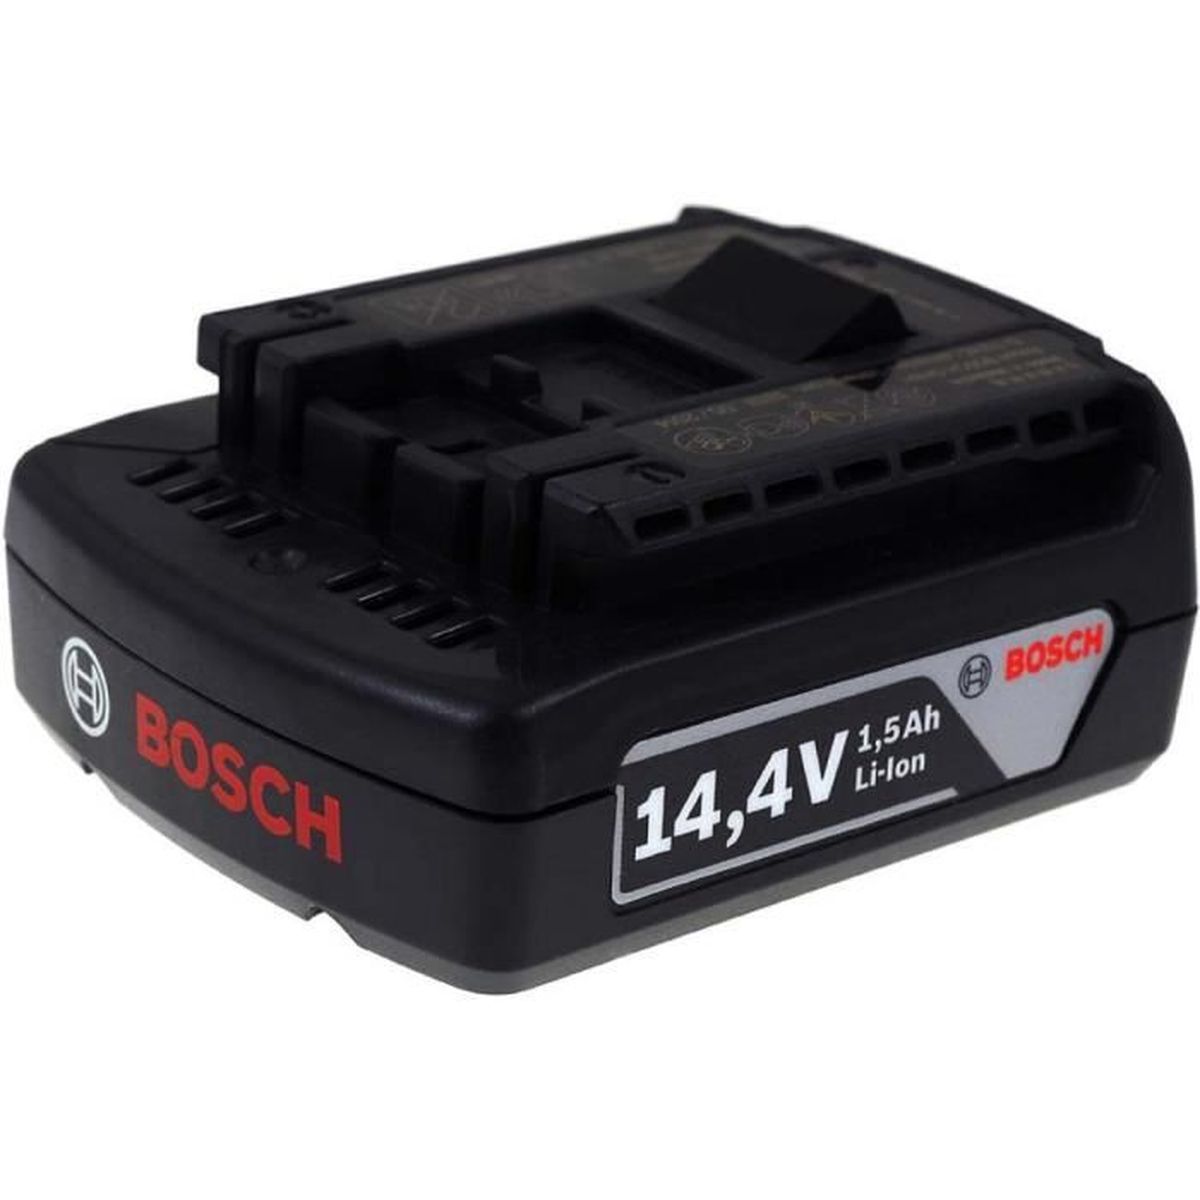 Bosch Batterie pour perceuse sans Fil PSR 14.4 LI-2 1500mAh Originale 14,4V Batterie Outil électroportatif Li-ION 